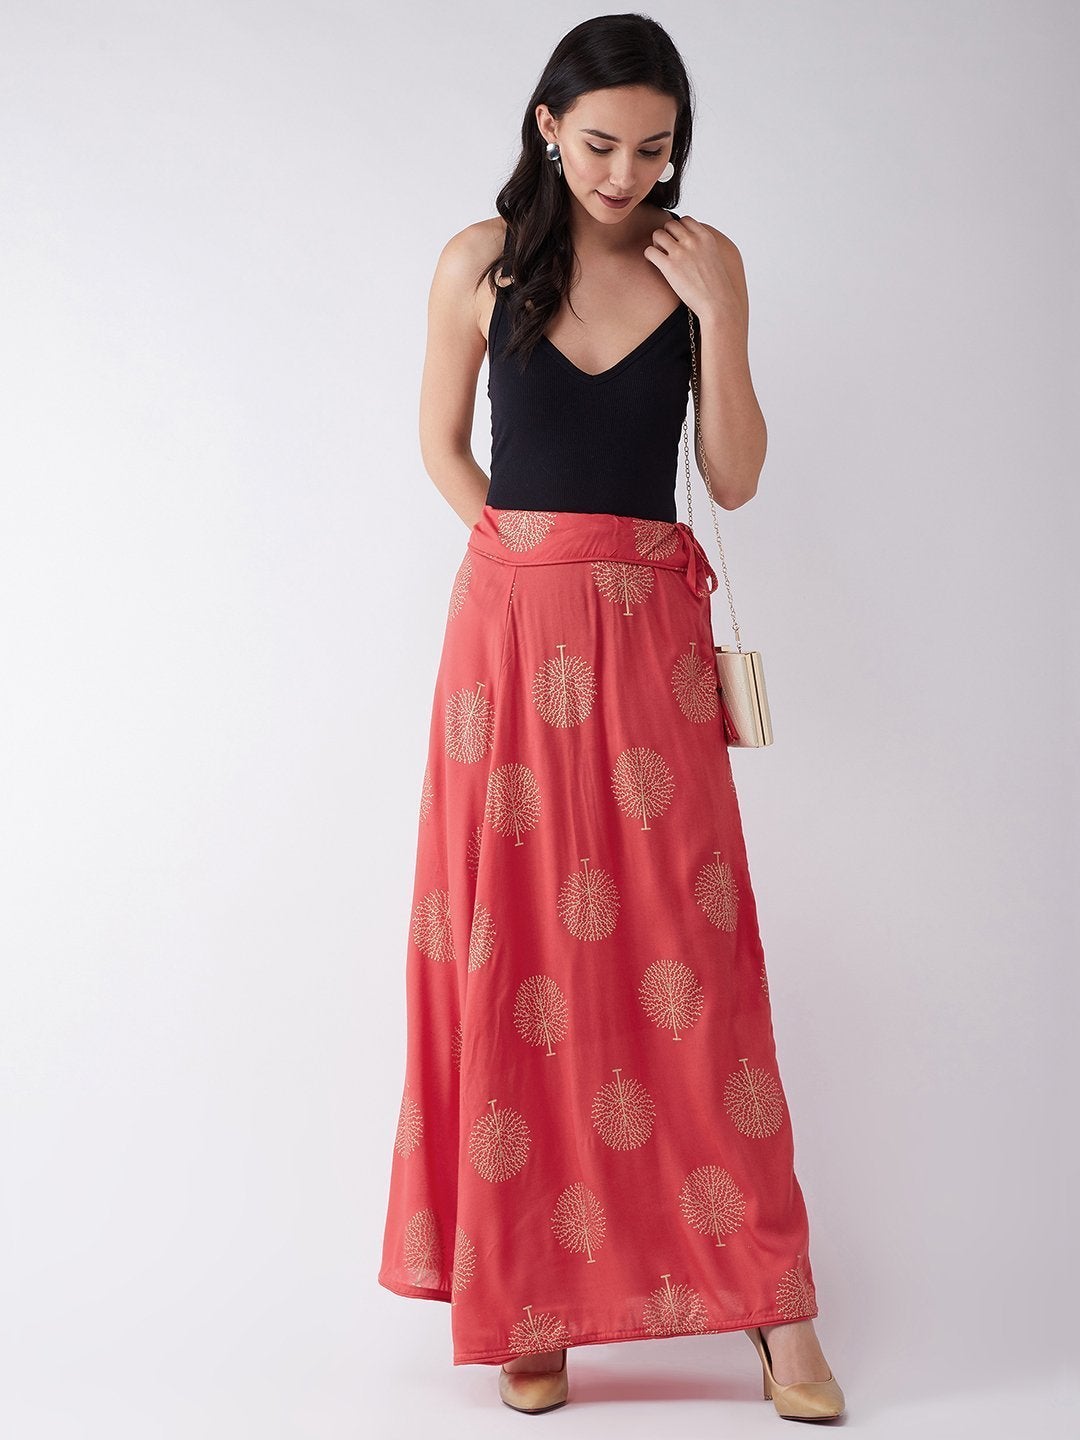 Women's Red Gold Print Skirt - InWeave